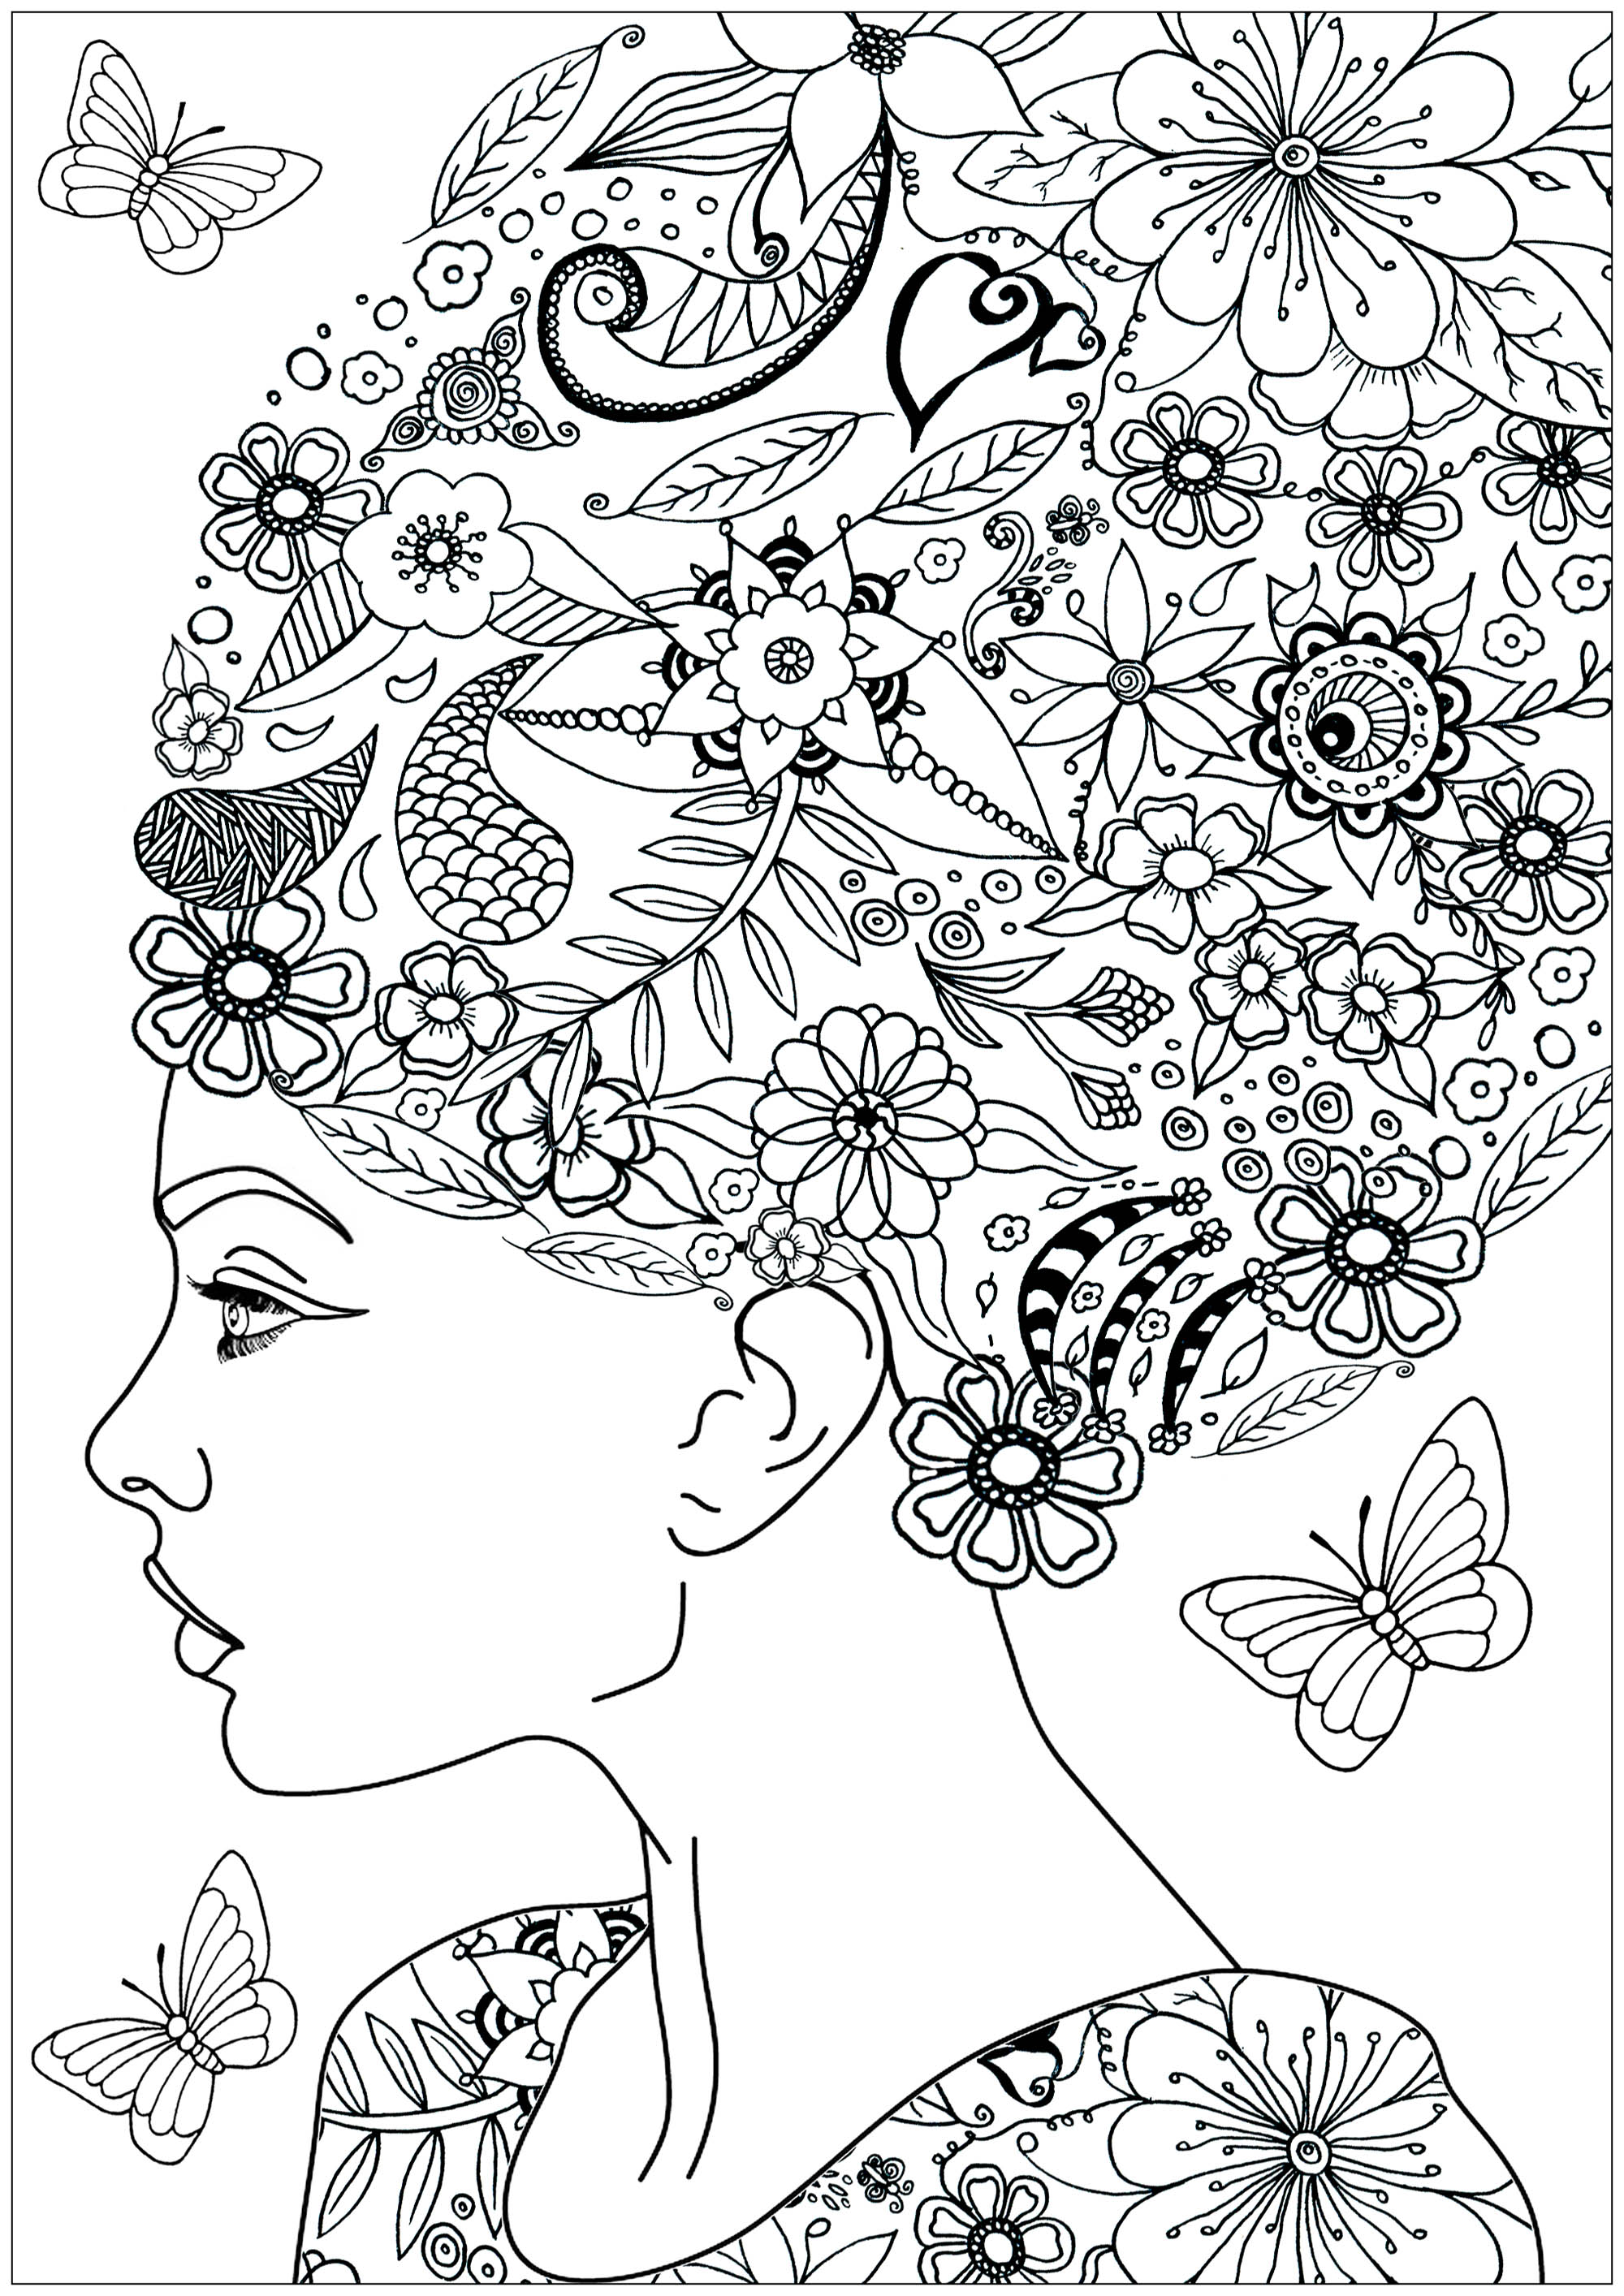 Colorate i bellissimi fiori e le foglie tra i capelli di questa donna... e le farfalle dell'albero che le volano intorno.